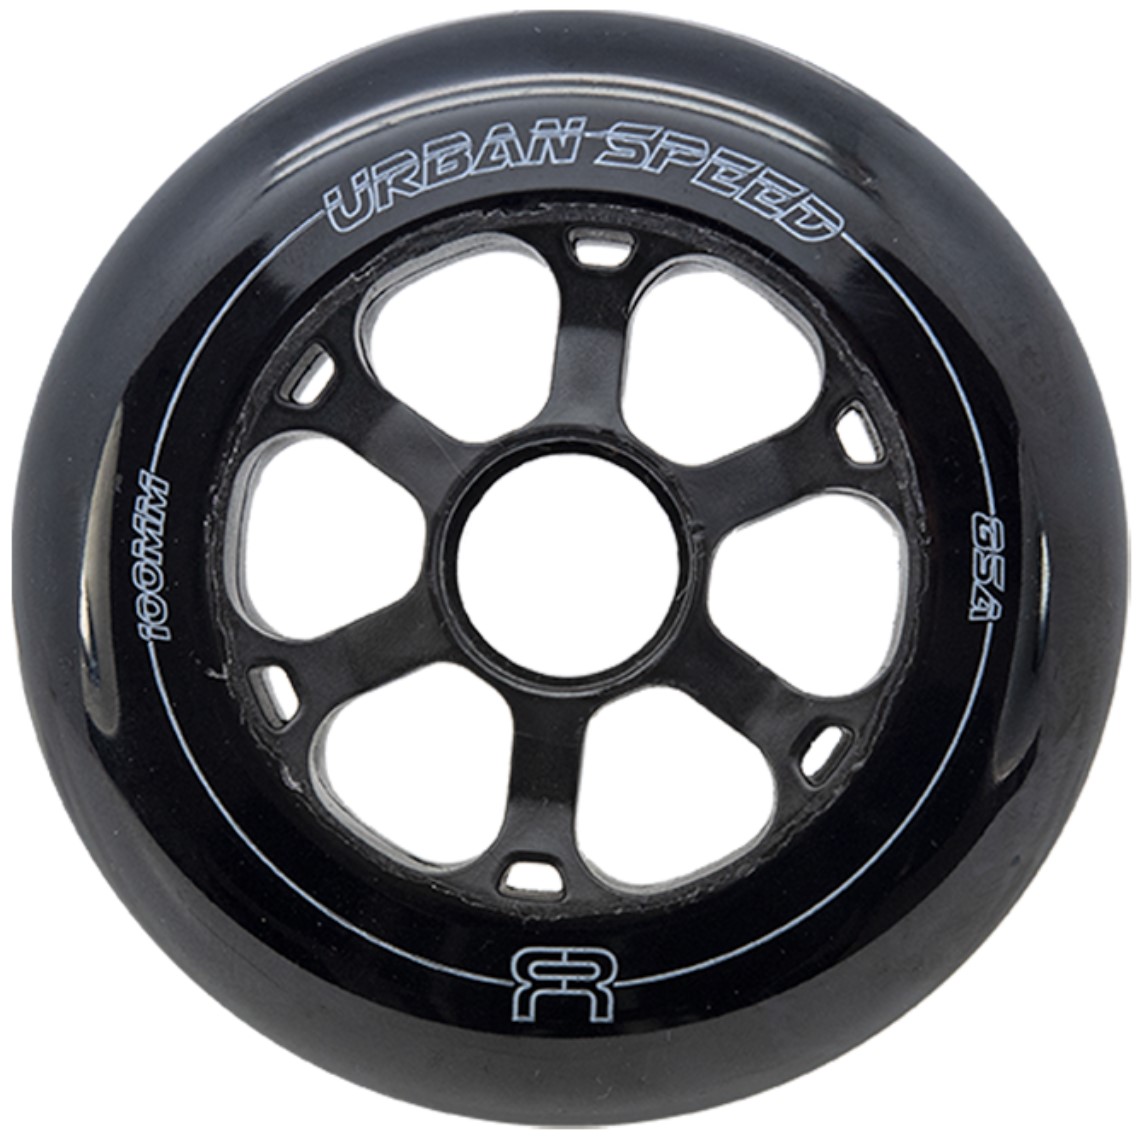 FR Urban Speed wheel 100 mm 85A Black